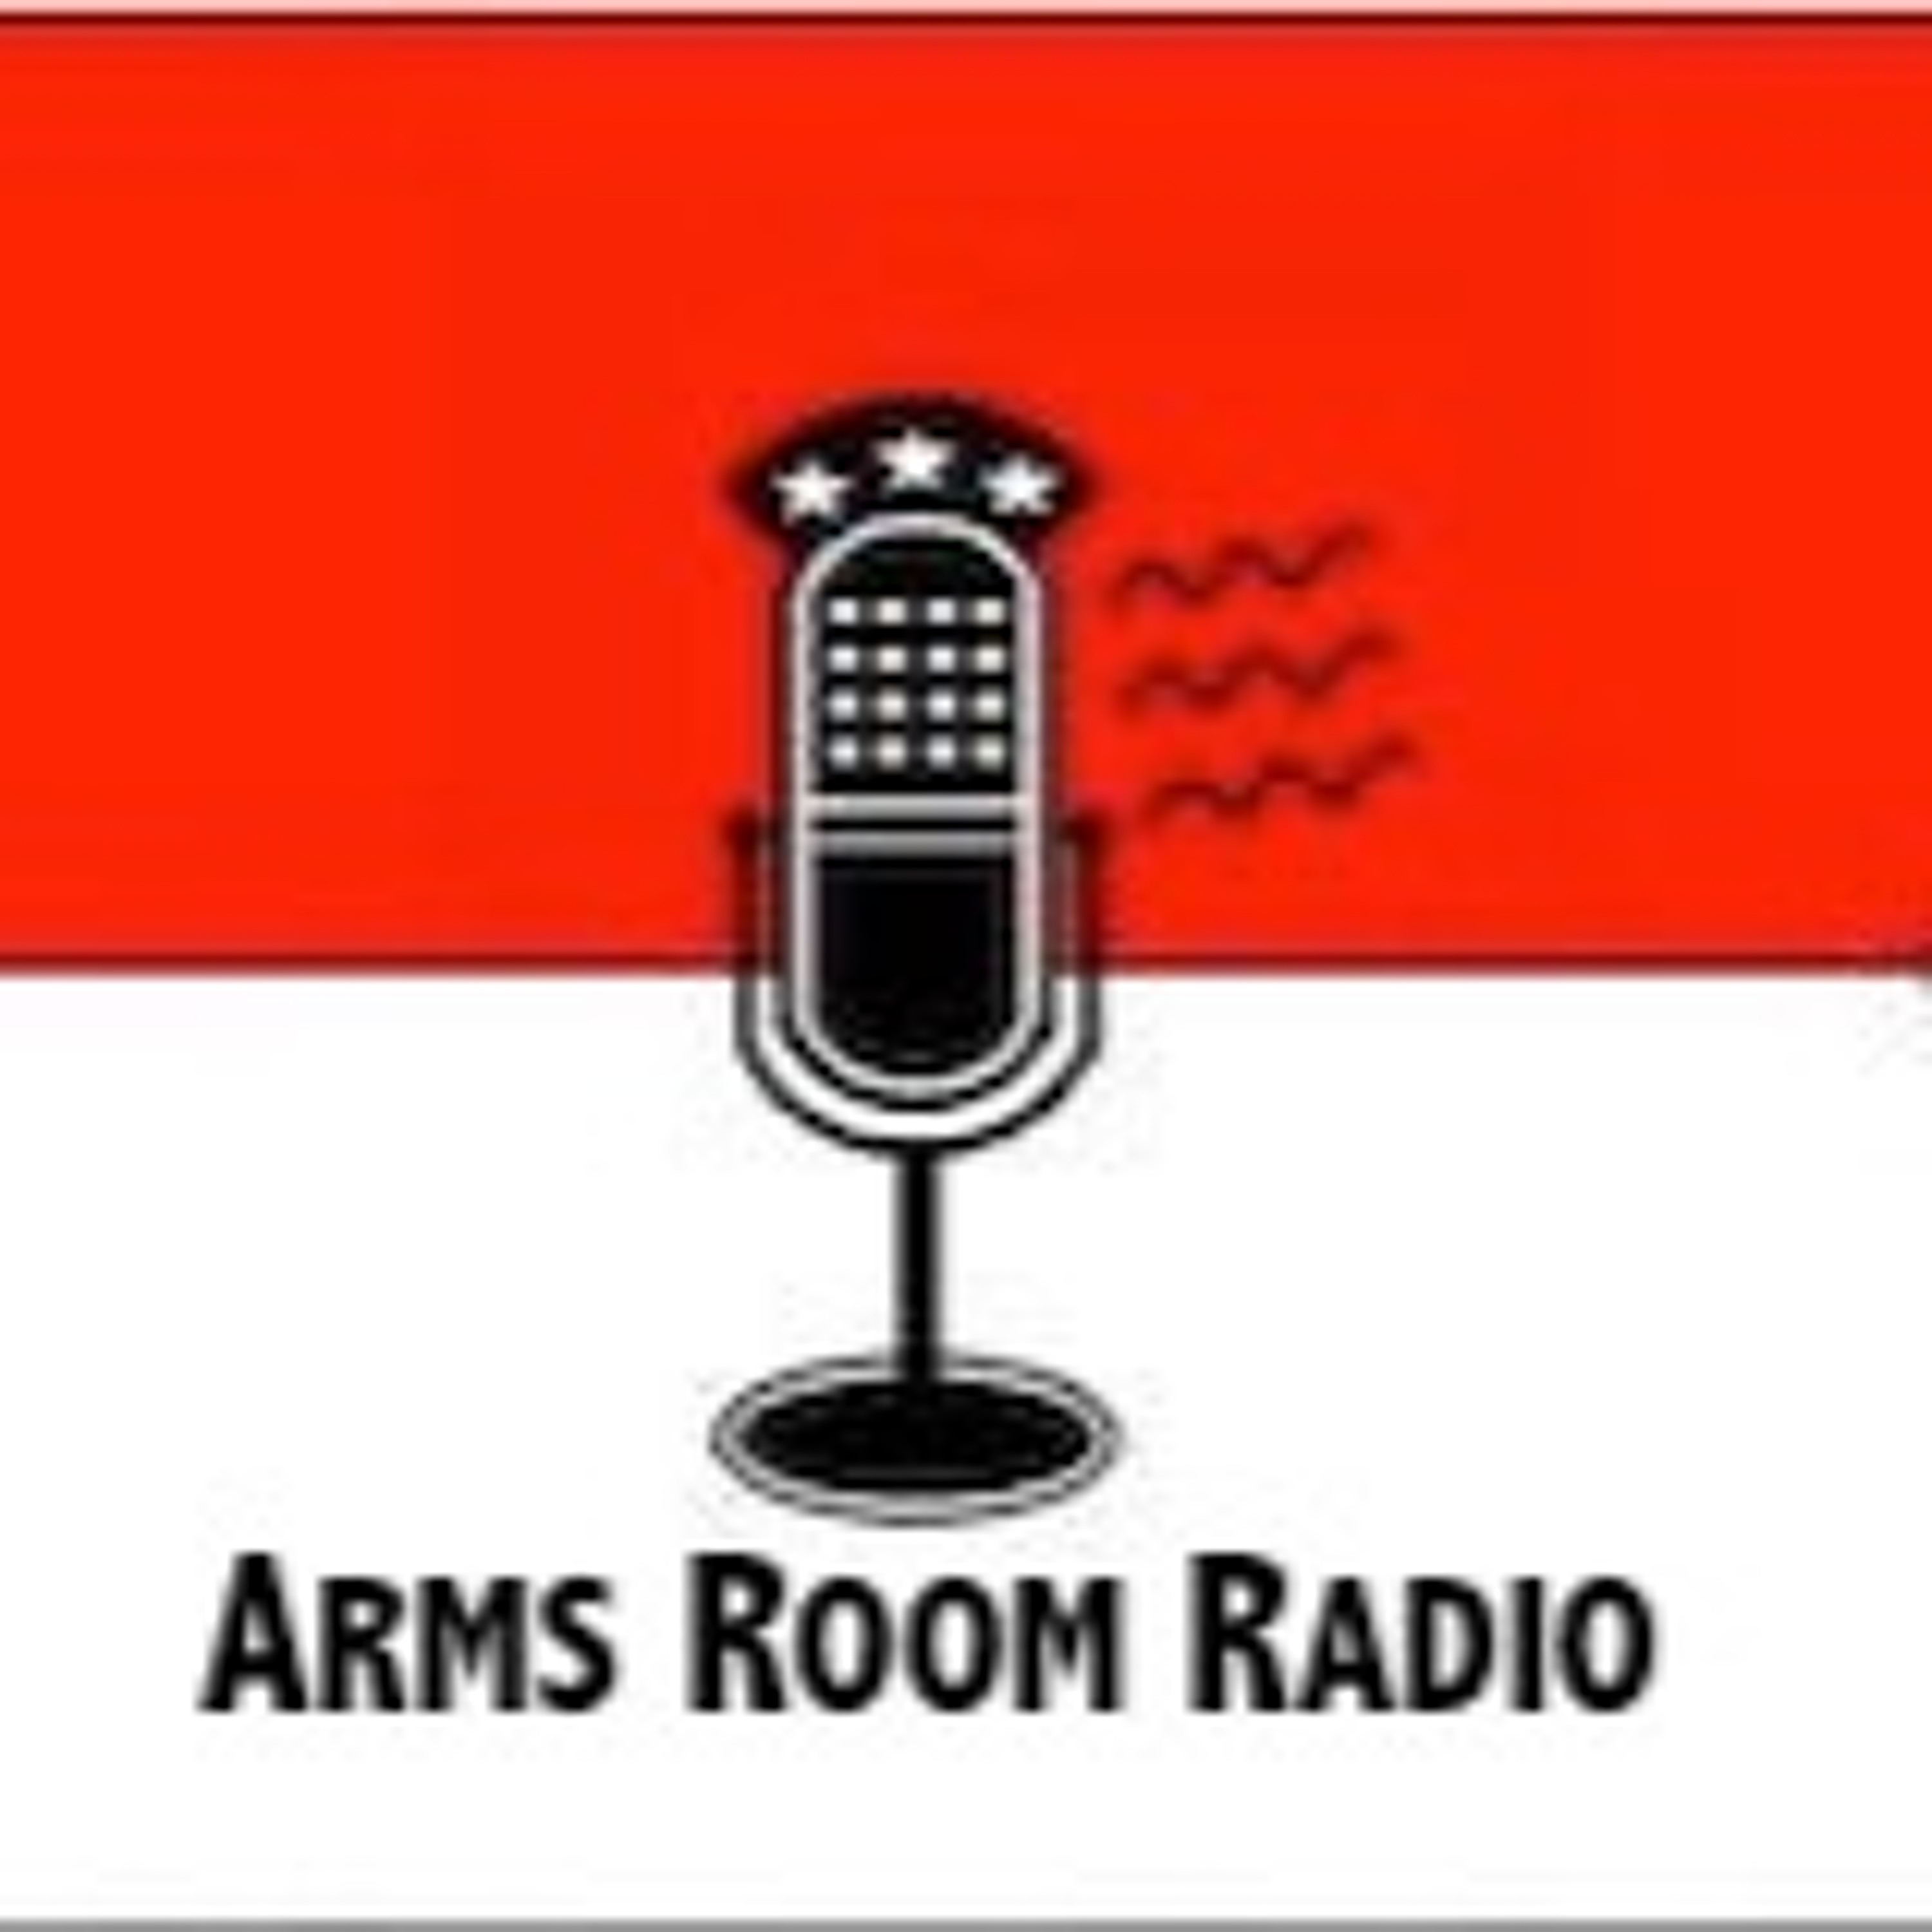 ArmsRoomRadio 08.29.20 Kenosha Shooting